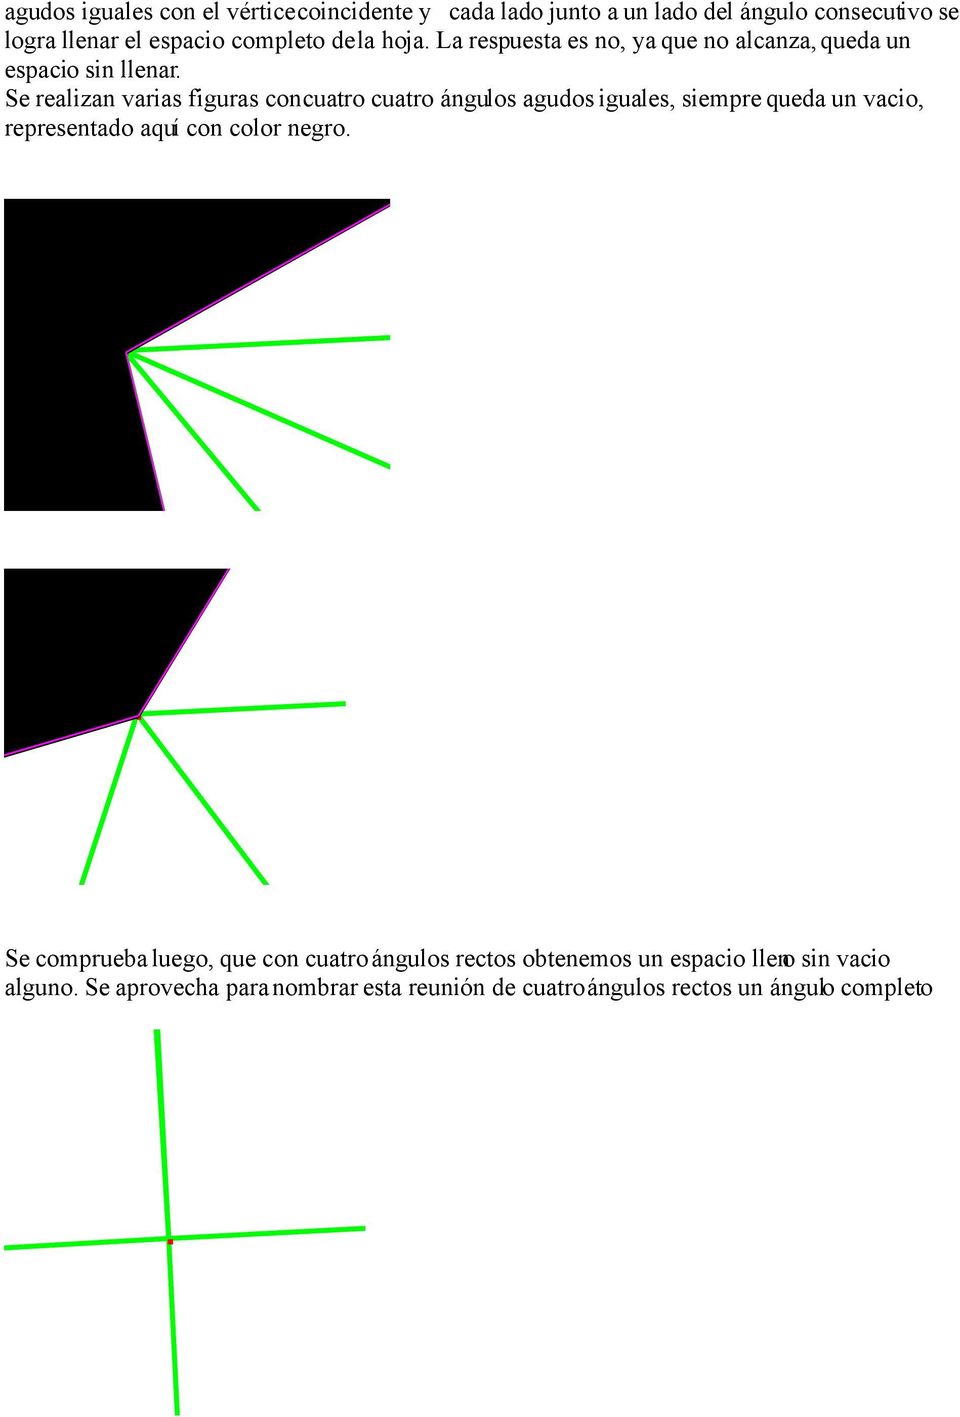 Se realizan varias figuras con cuatro cuatro ángulos agudos iguales, siempre queda un vacio, representado aquí con color negro.